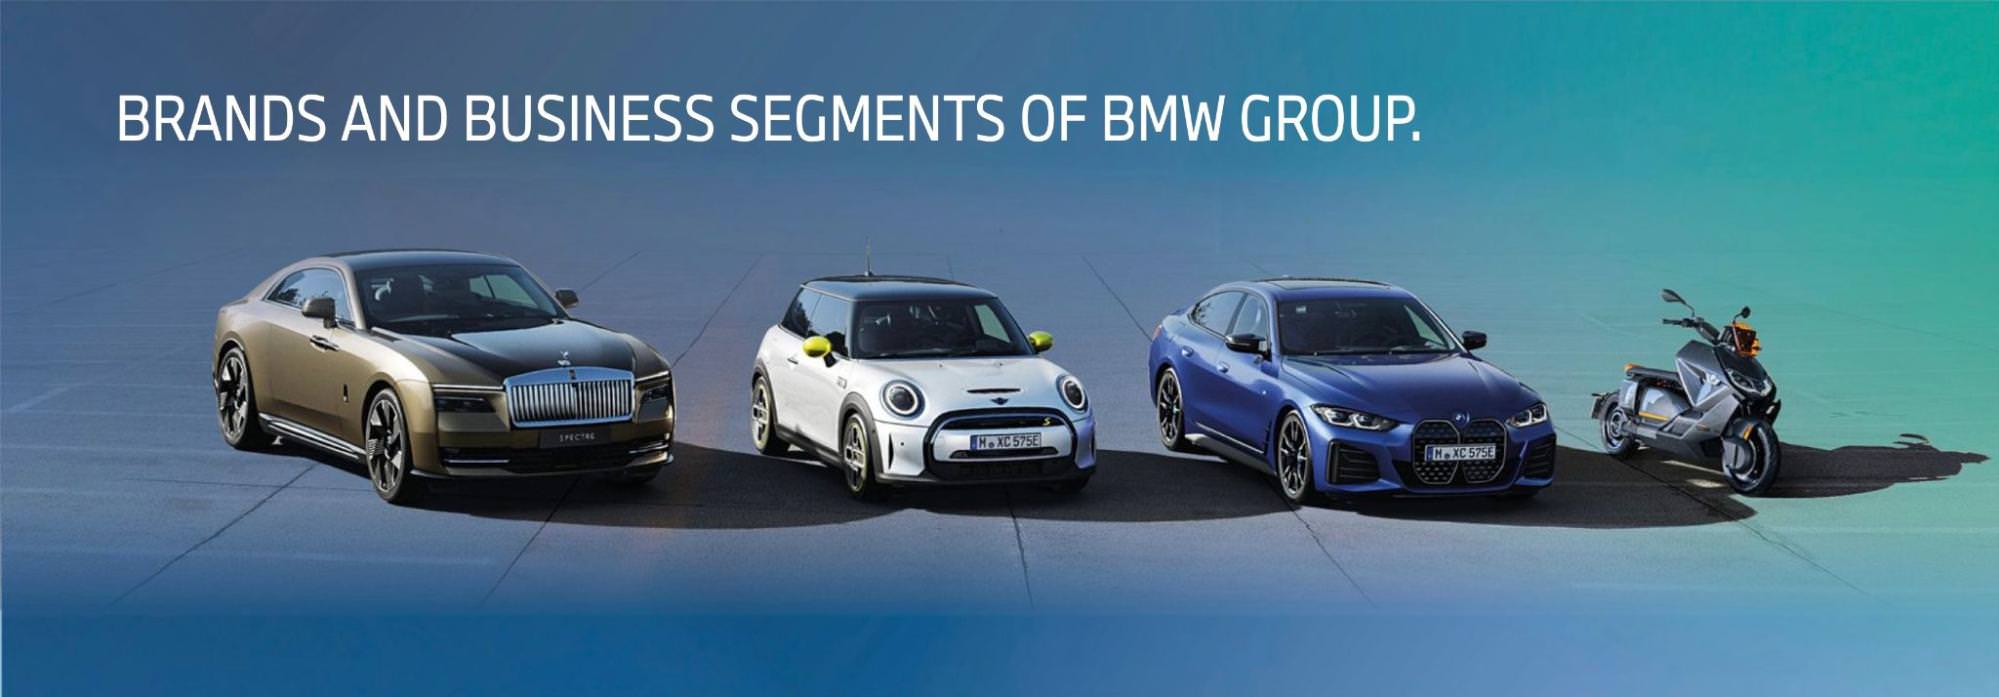 Infografika przedstawiająca marki i segmenty biznesowe BMW Group.